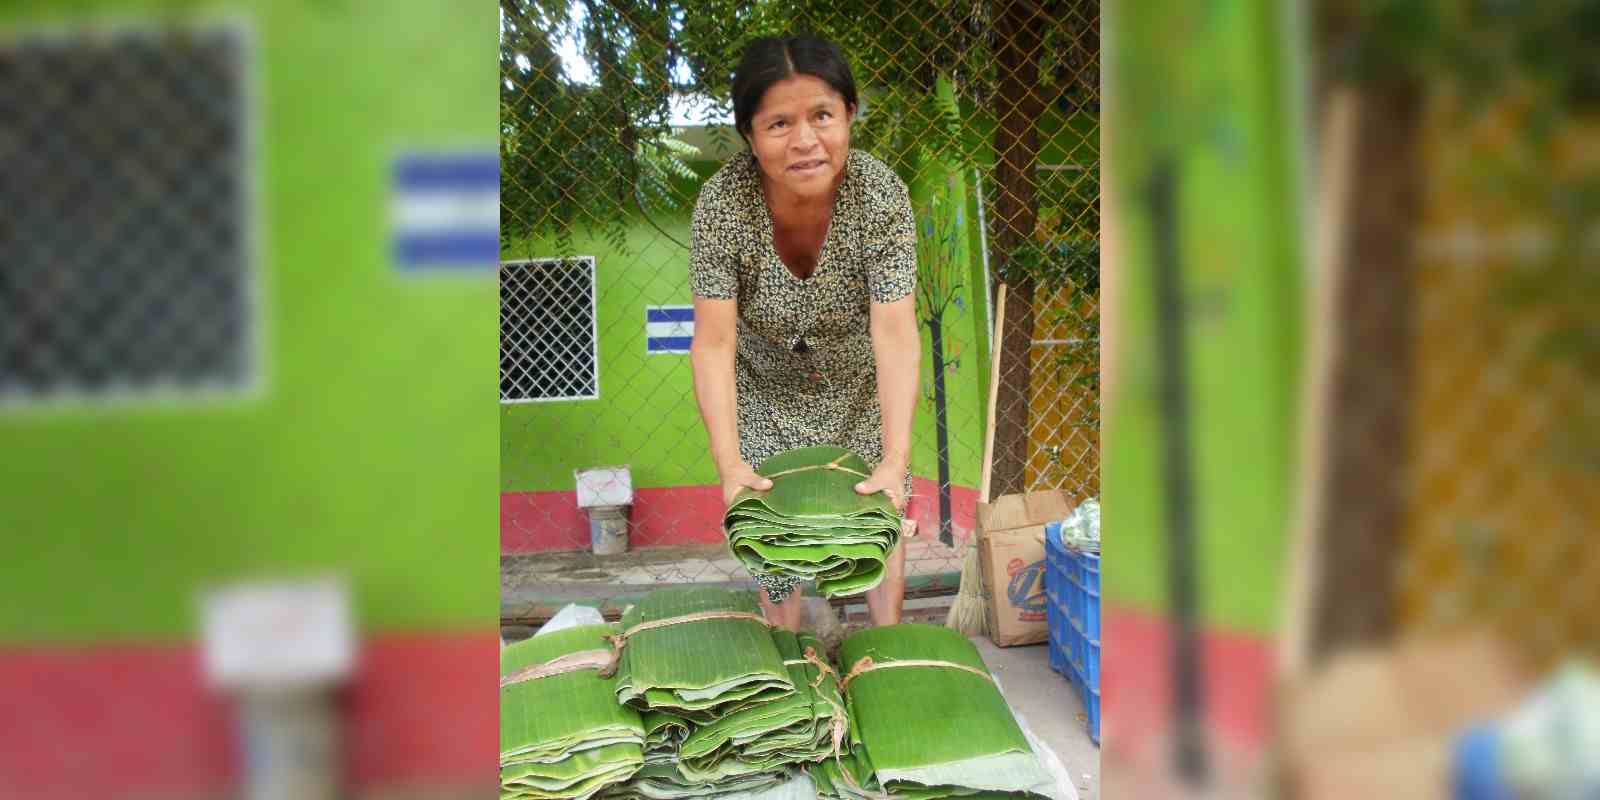 Los productos que comercializan las familias del campo en ciudades como Ocotal y Somoto, son promovidas principalmente por mujeres de pueblos indígenas.